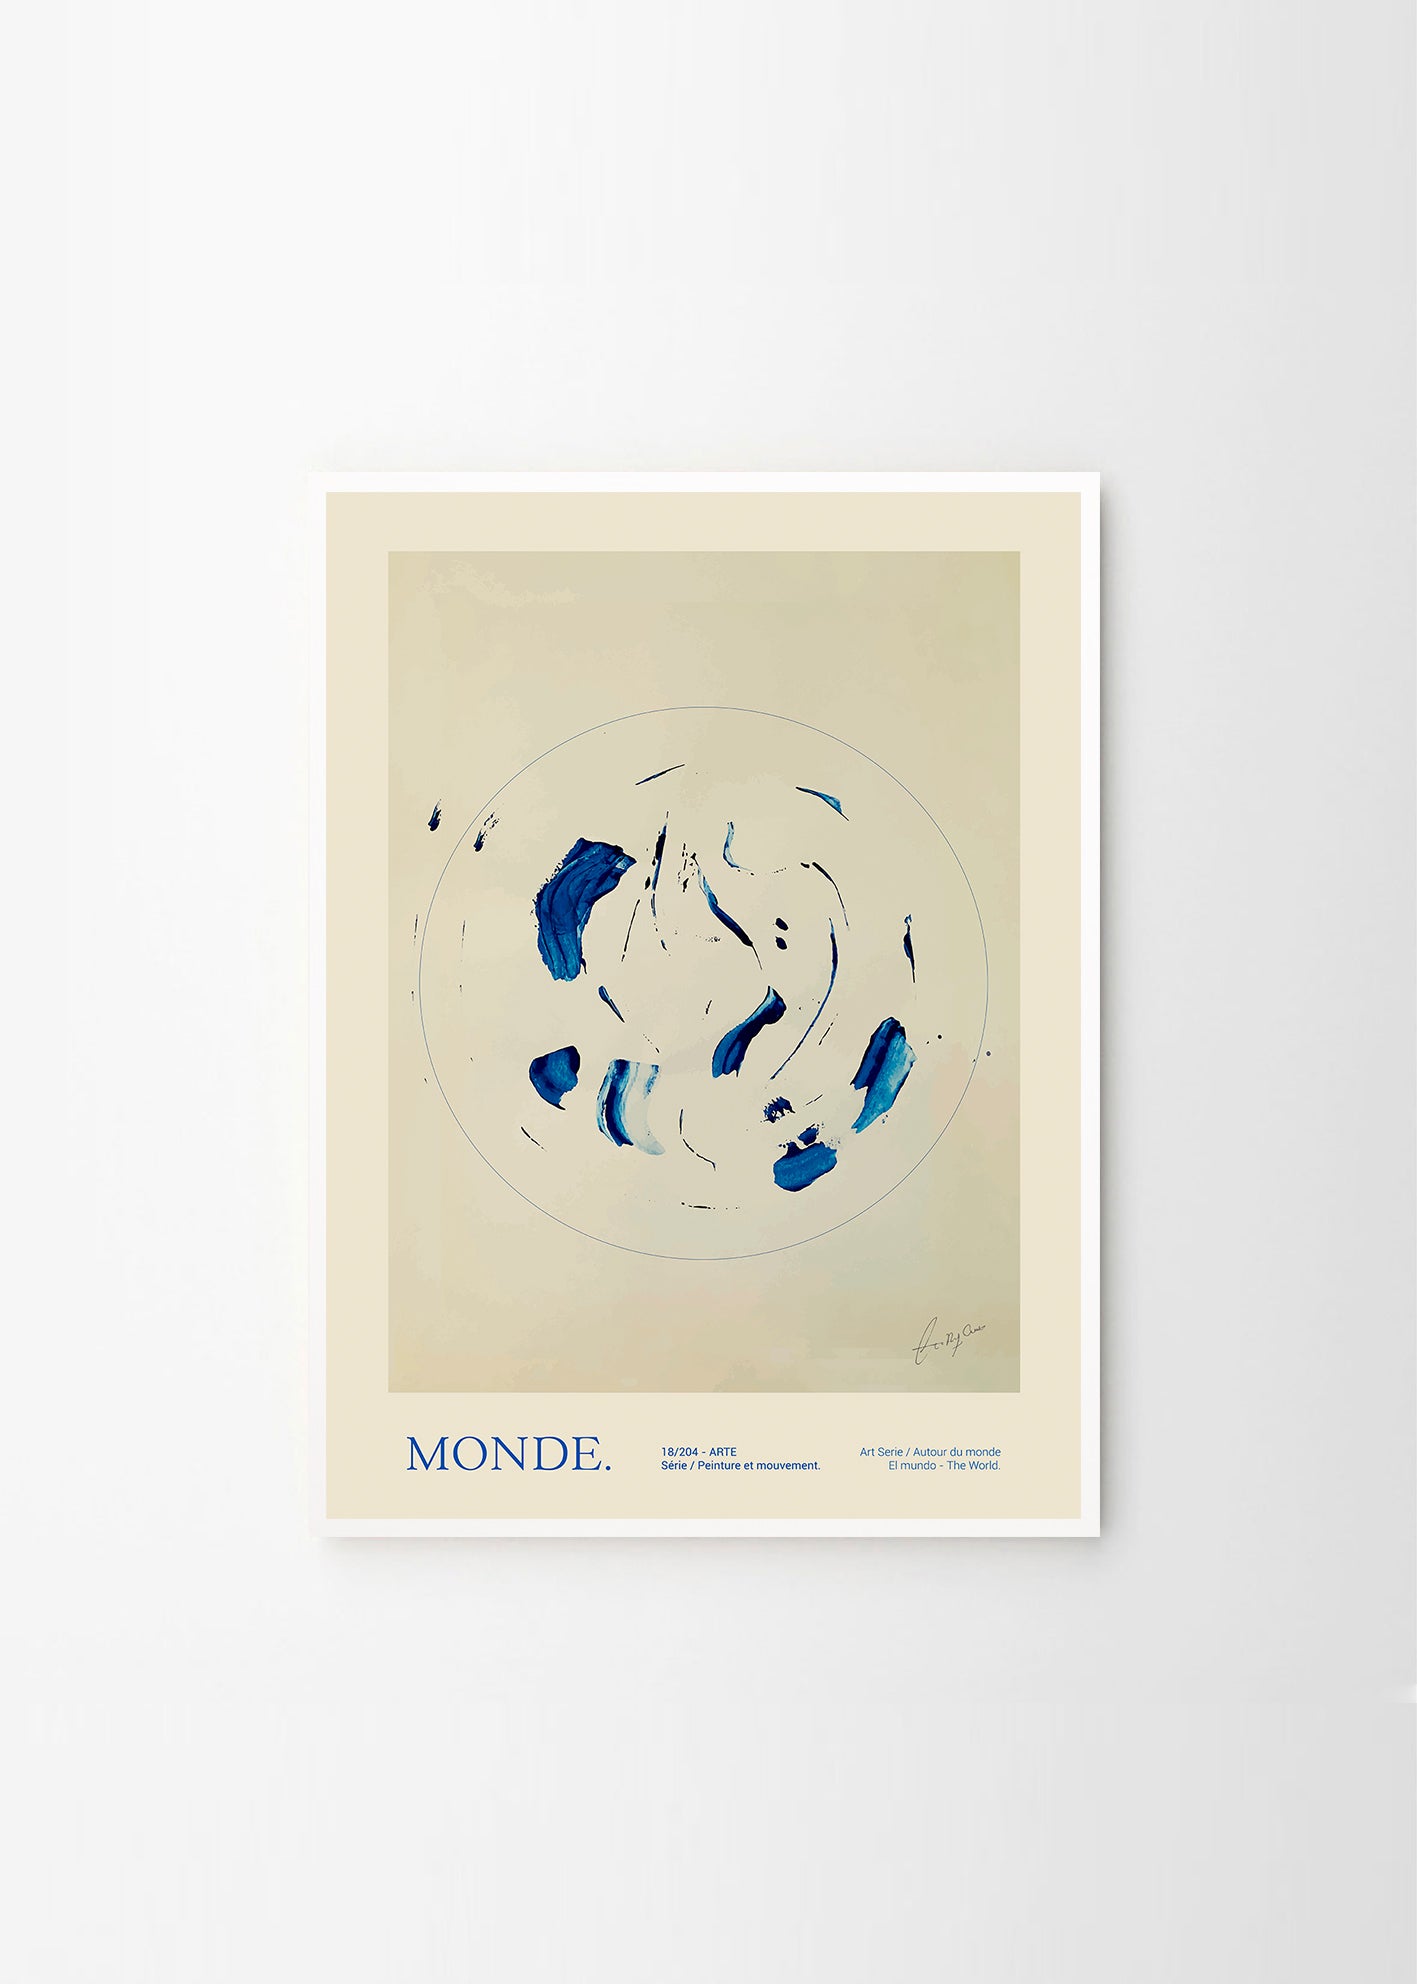 Plakát Le Monde by Lucrecia Rey Caro